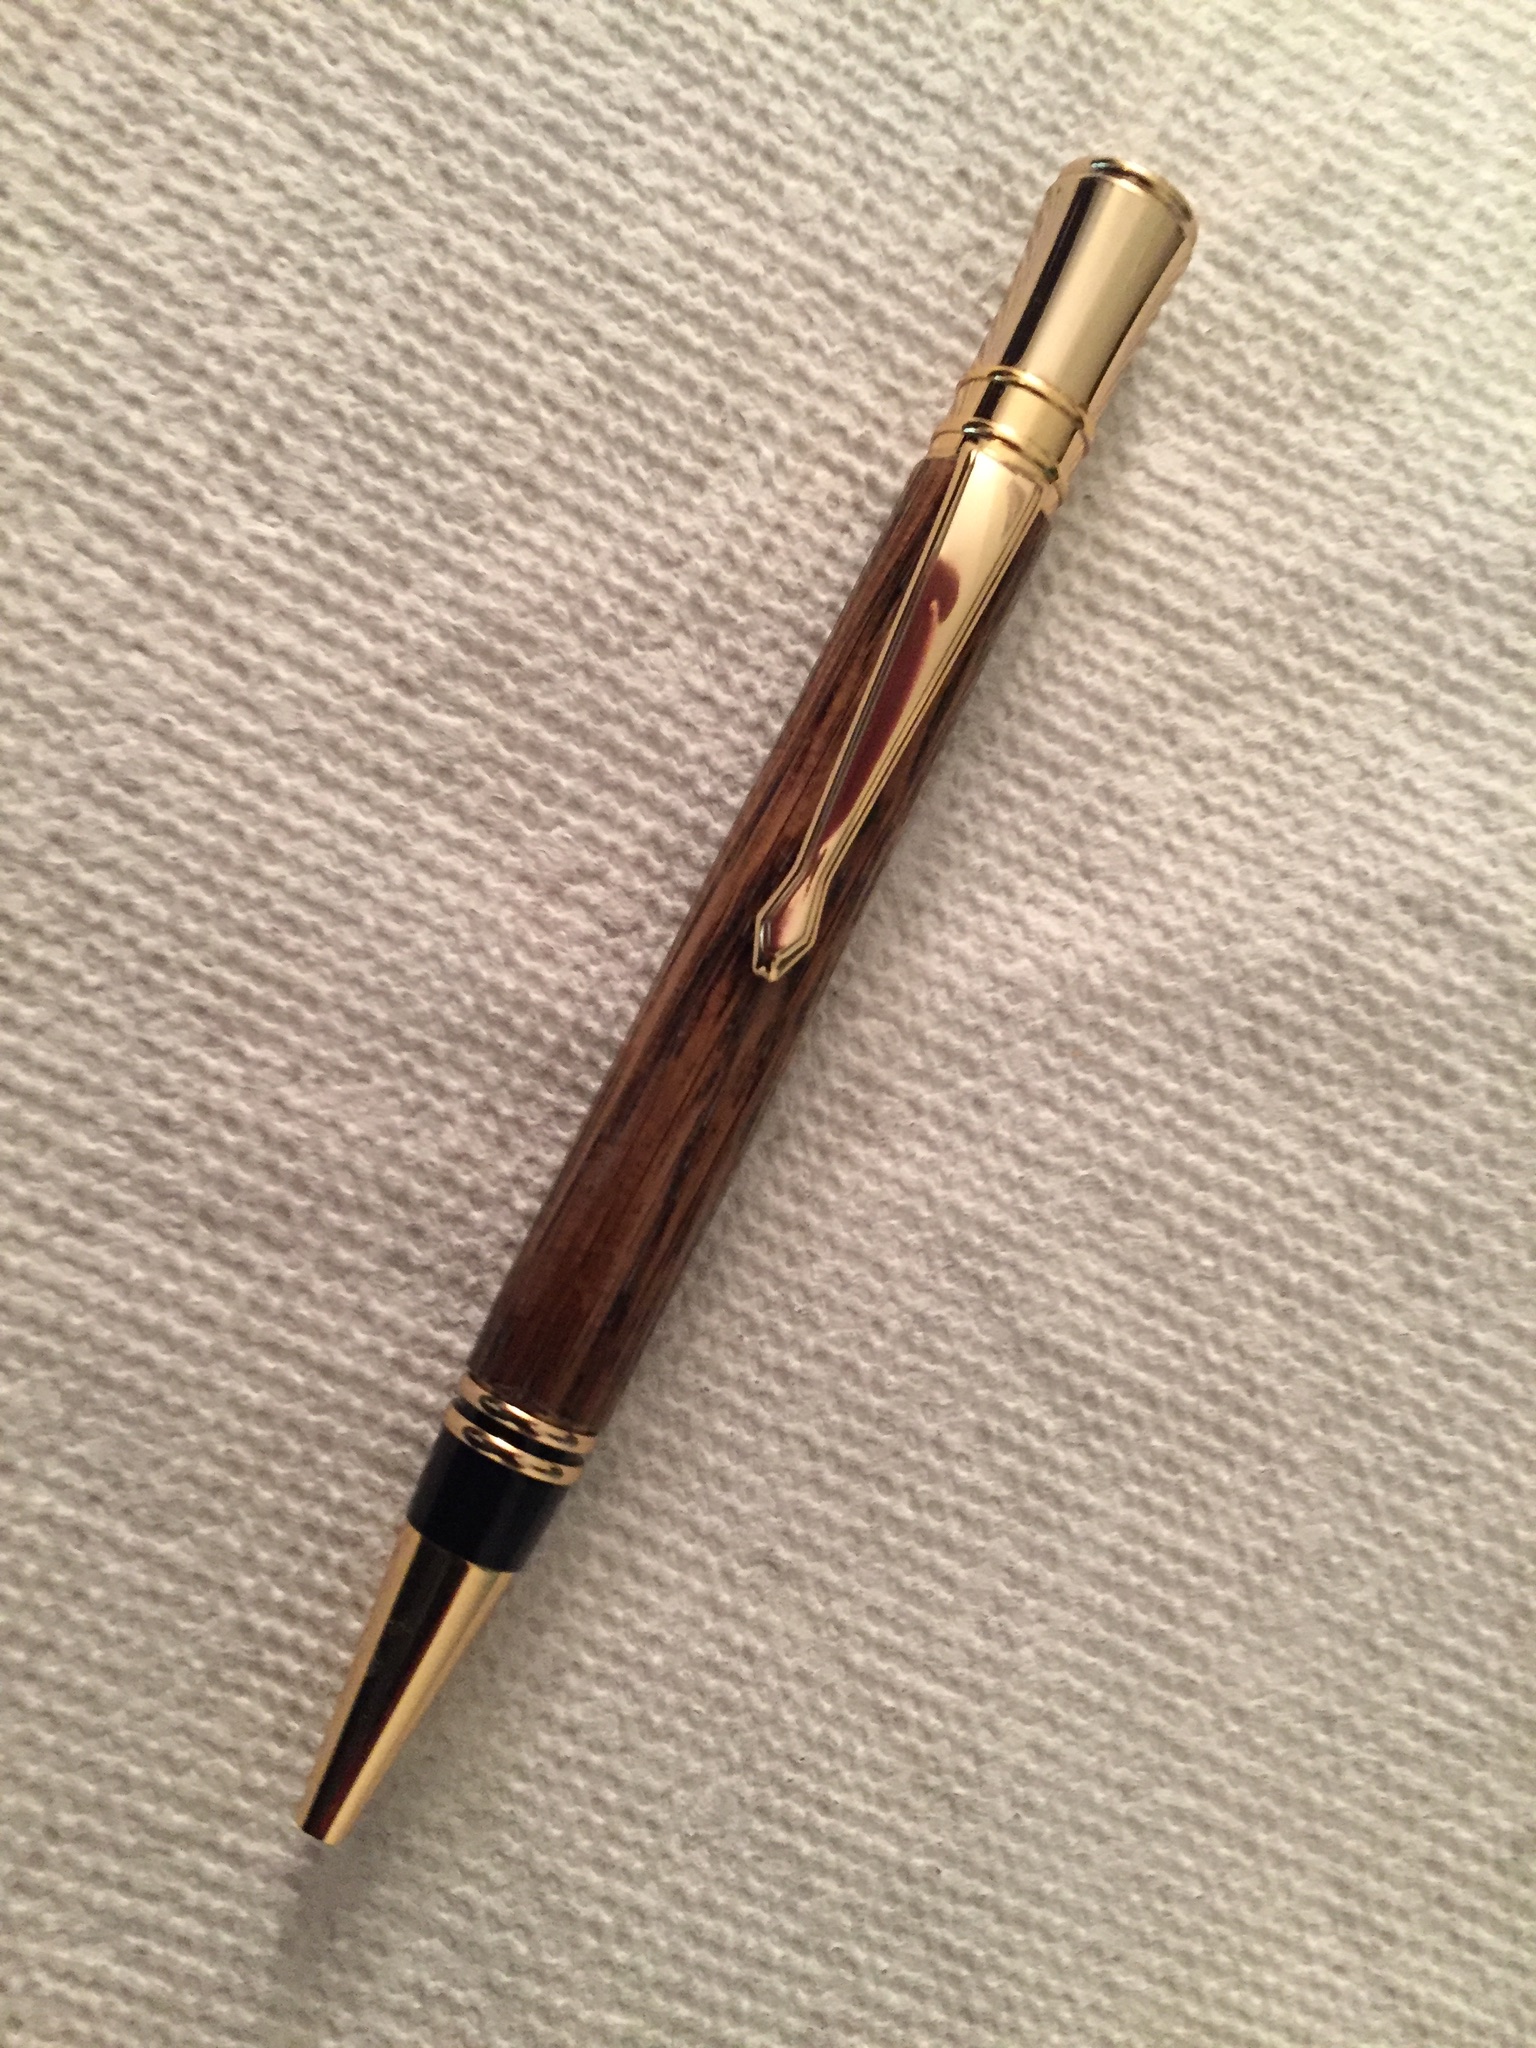 My first pen